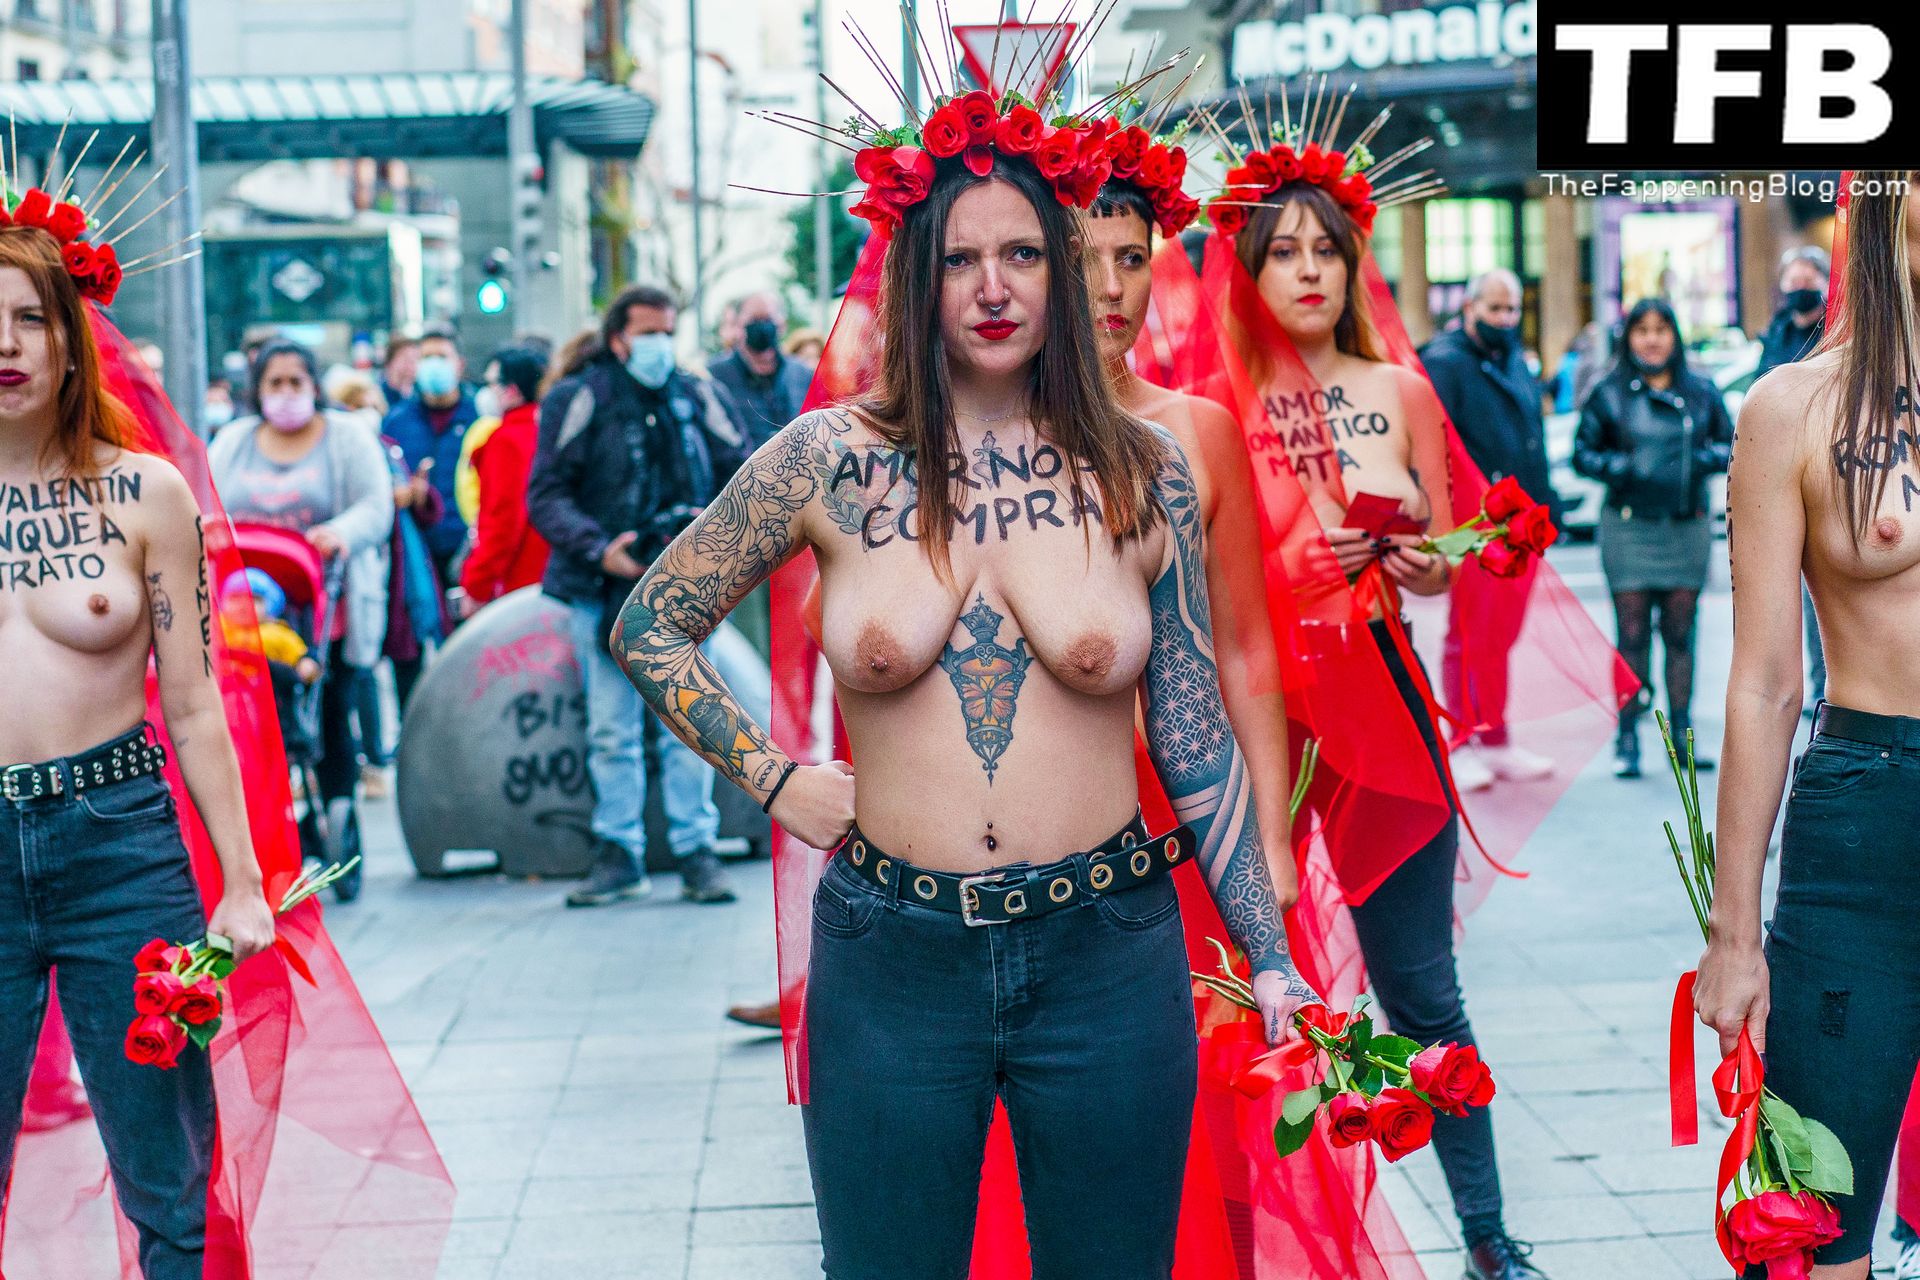 FEMEN-Topless-Girls-The-Fappening-Blog-20.jpg